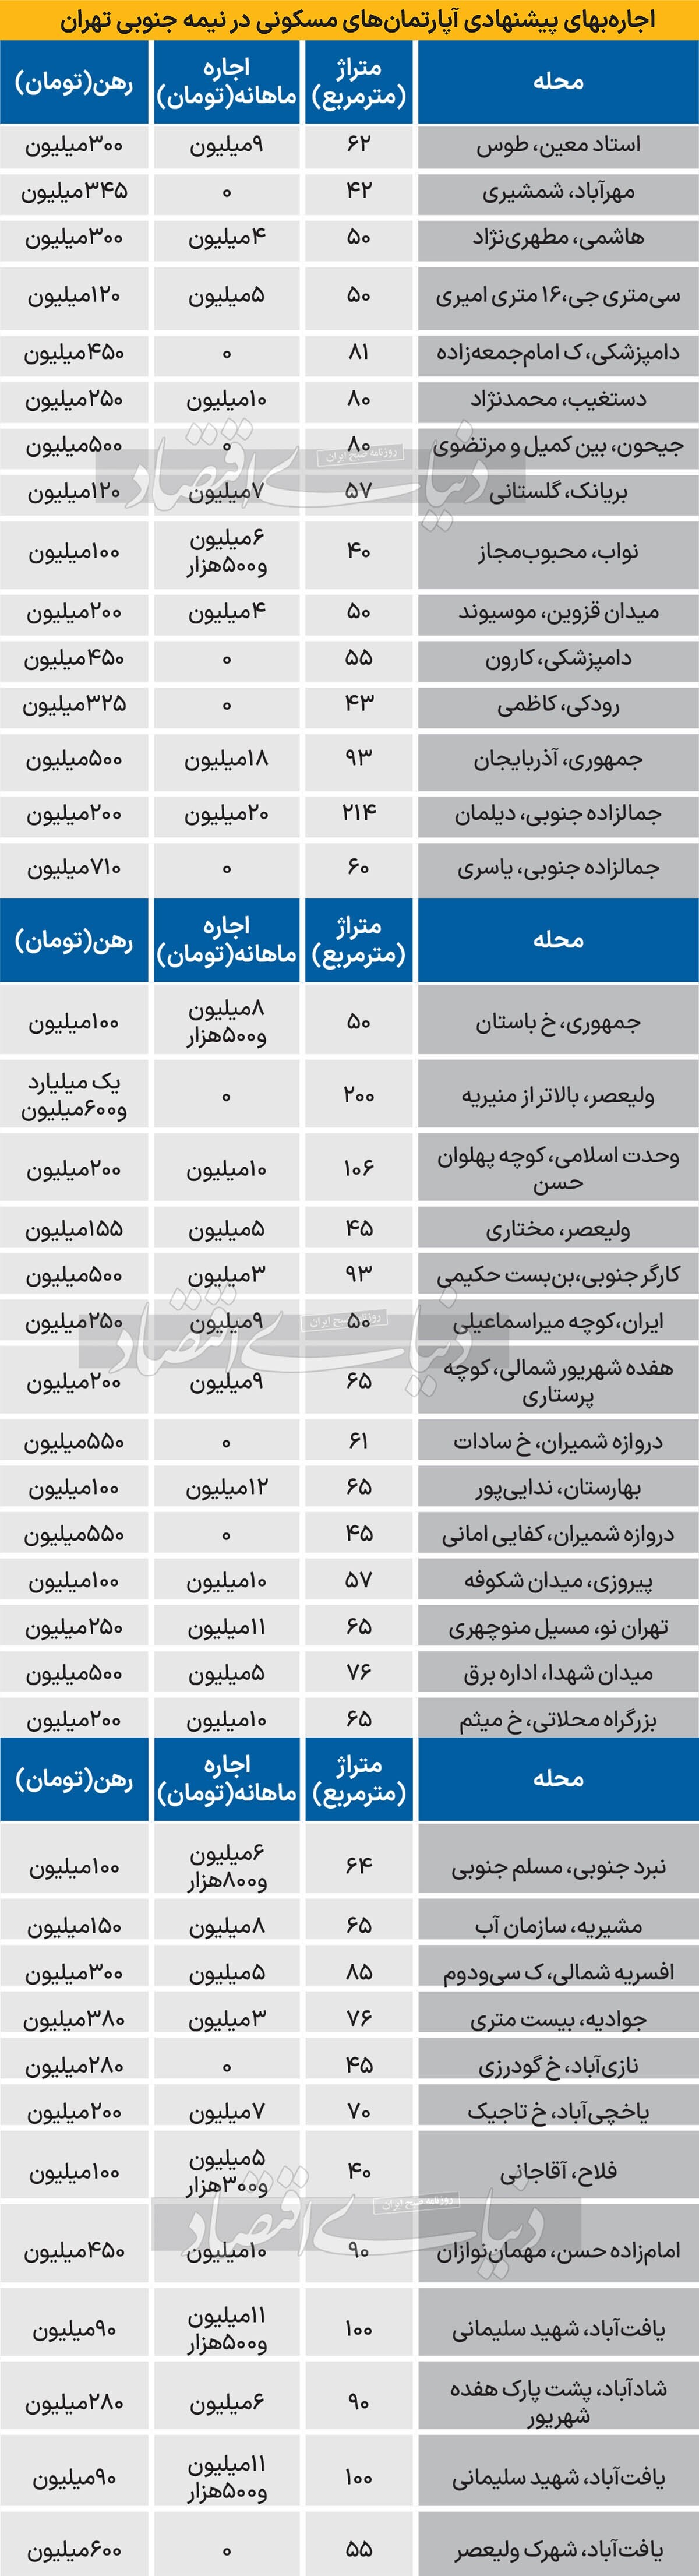 رهن و اجاره آپارتمان مسکونی در جنوب تهران چقدر هزینه دارد؟+ جدول